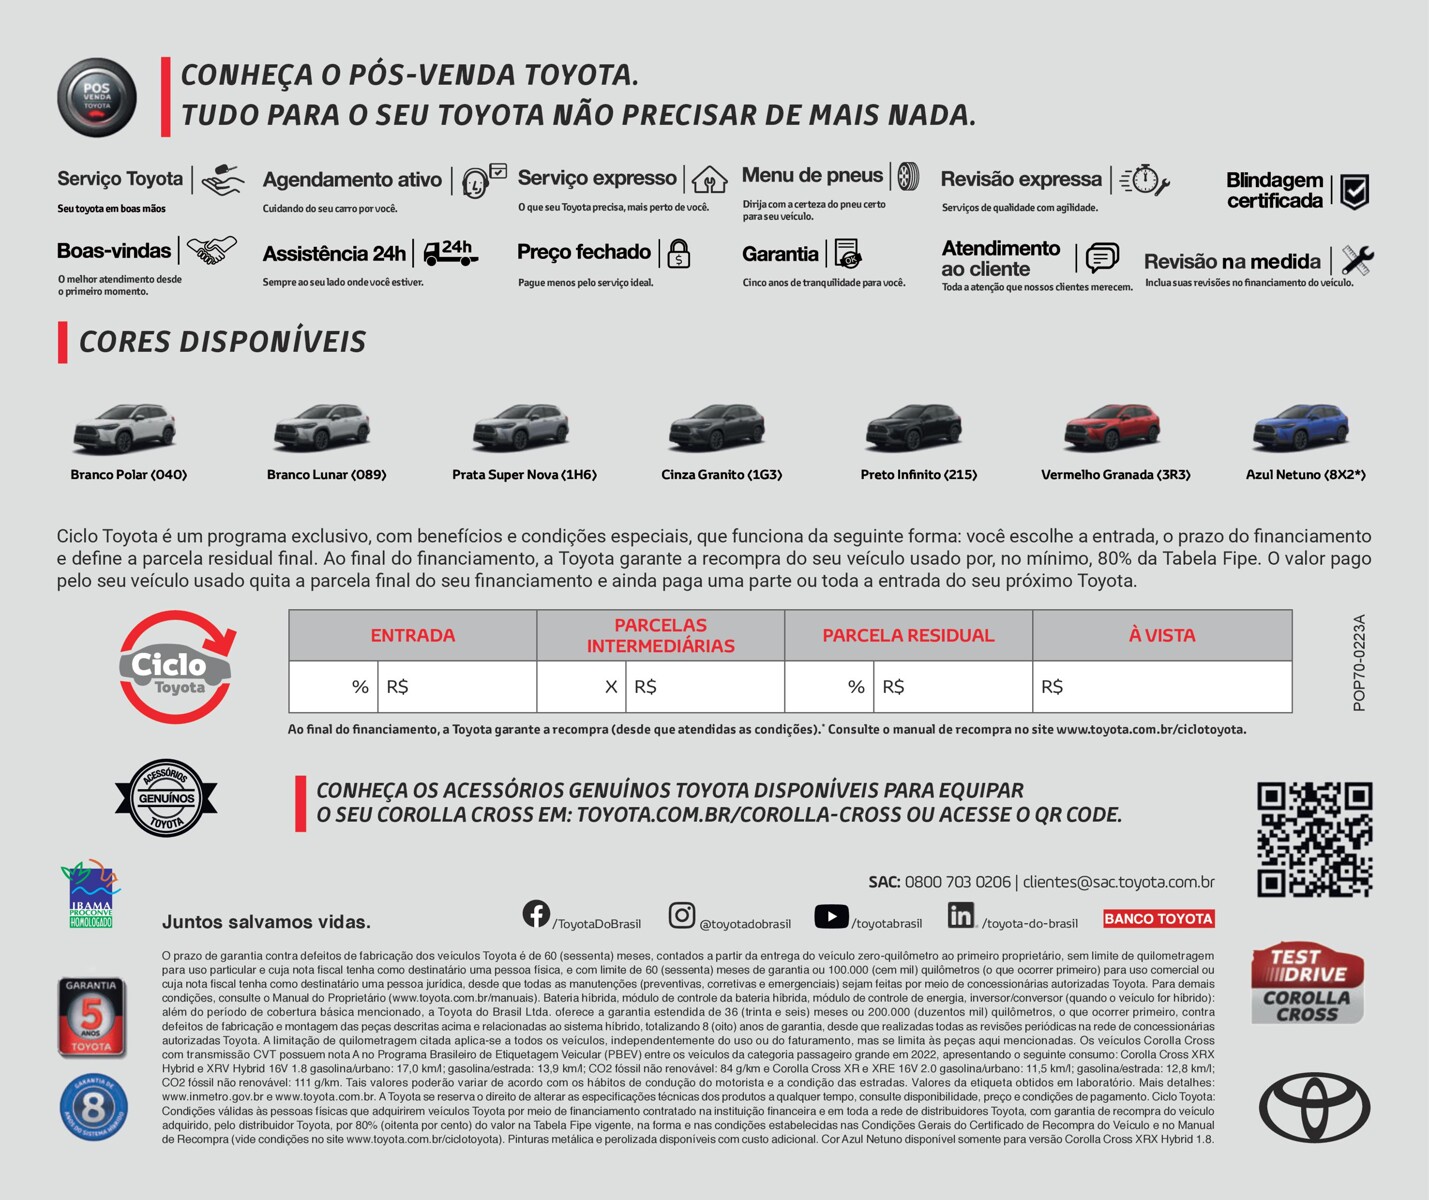 Serviço Toyota | Agendamento ativo, Serviço expresso, Menu de pneus, Revisão expressa